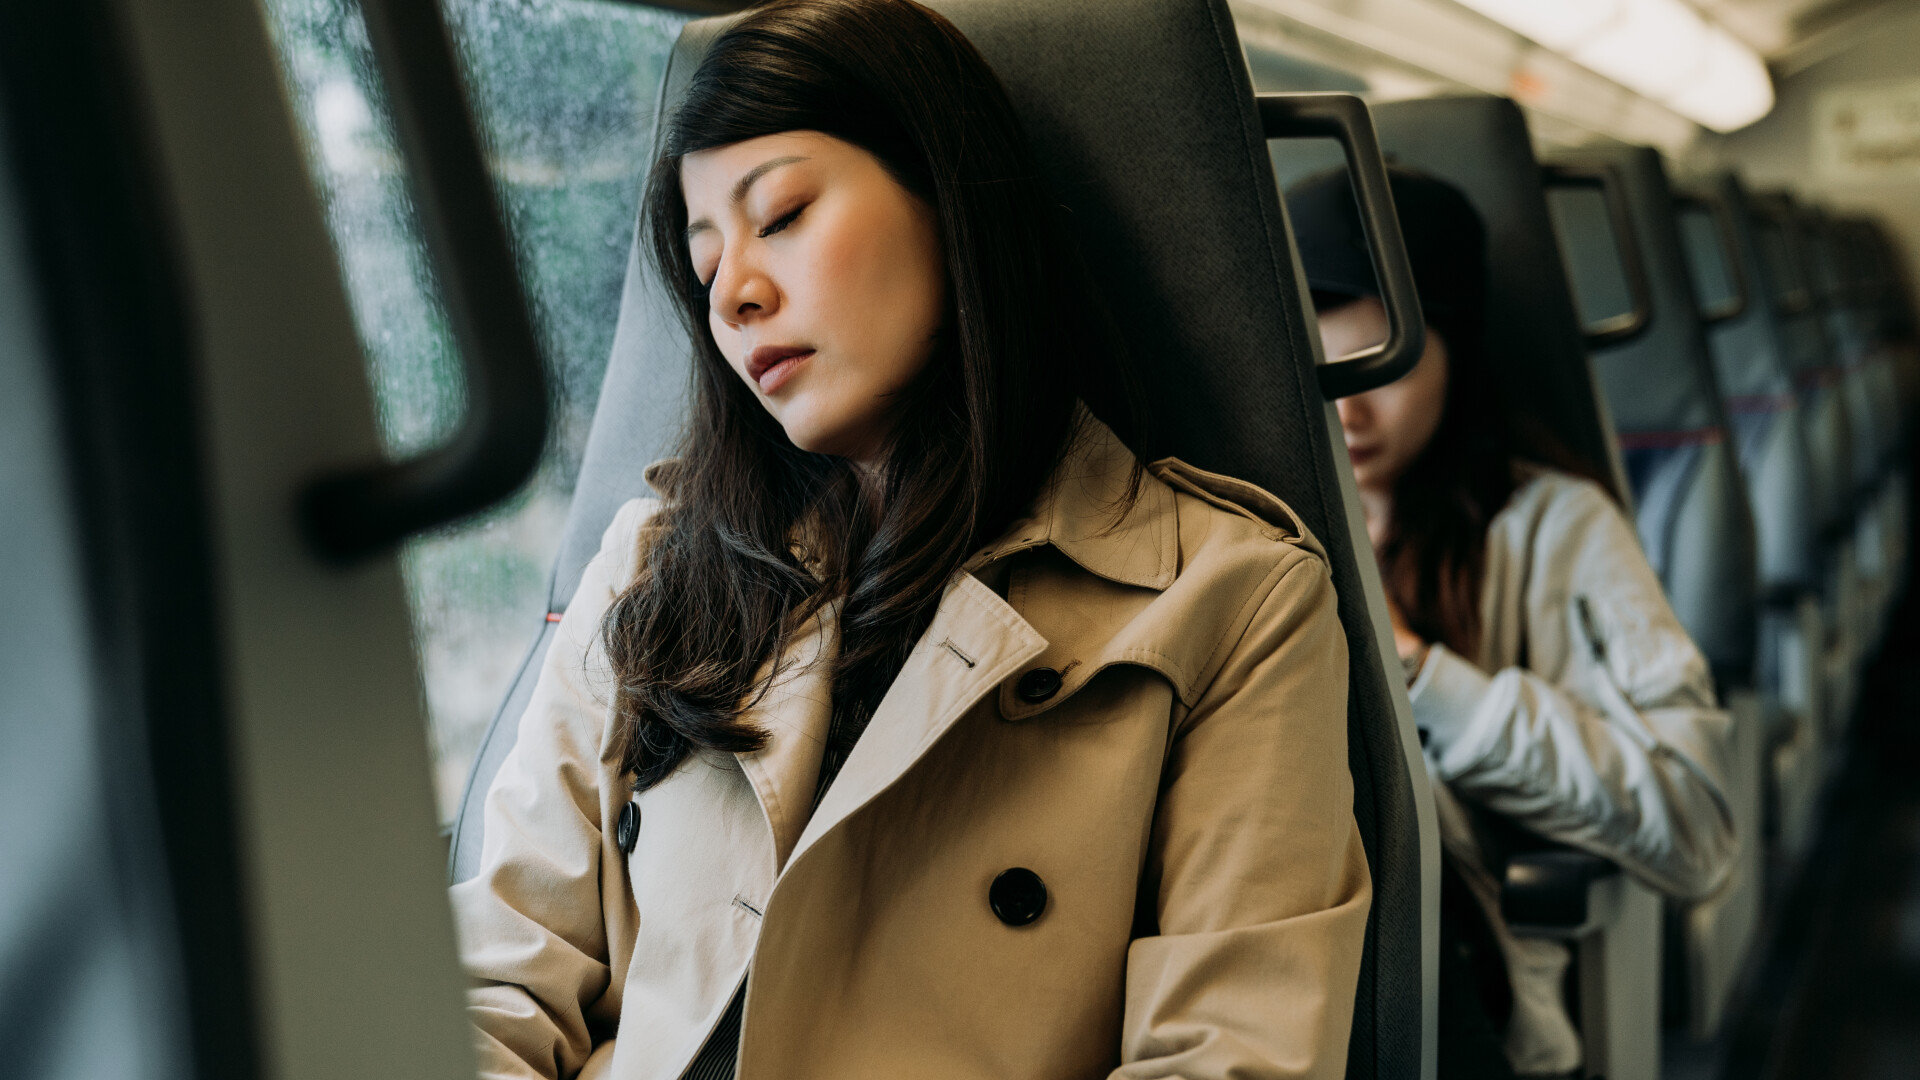 o femeie doarme in tren